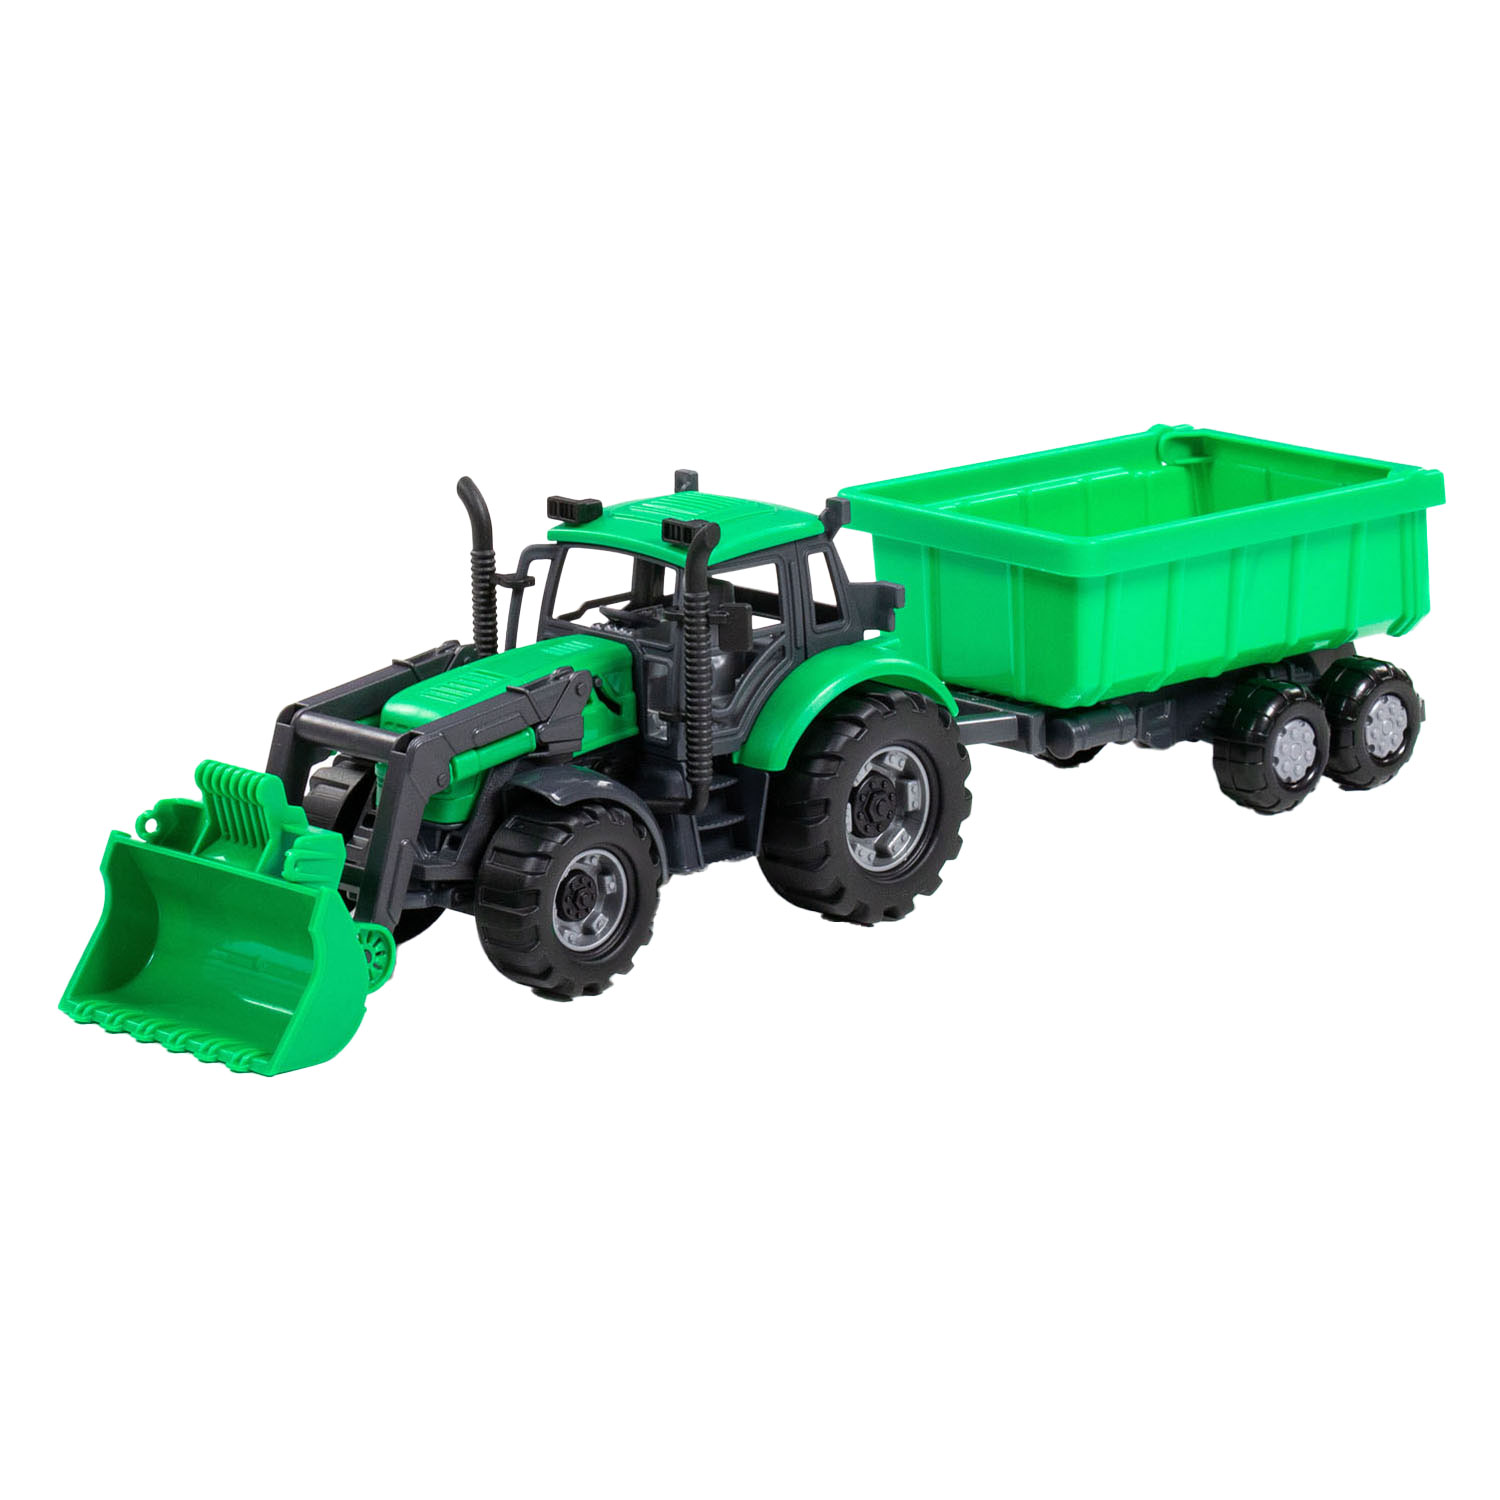 Cavallino Traktor mit Lader und Anhänger, Kipper, grün, Maßstab 1:32